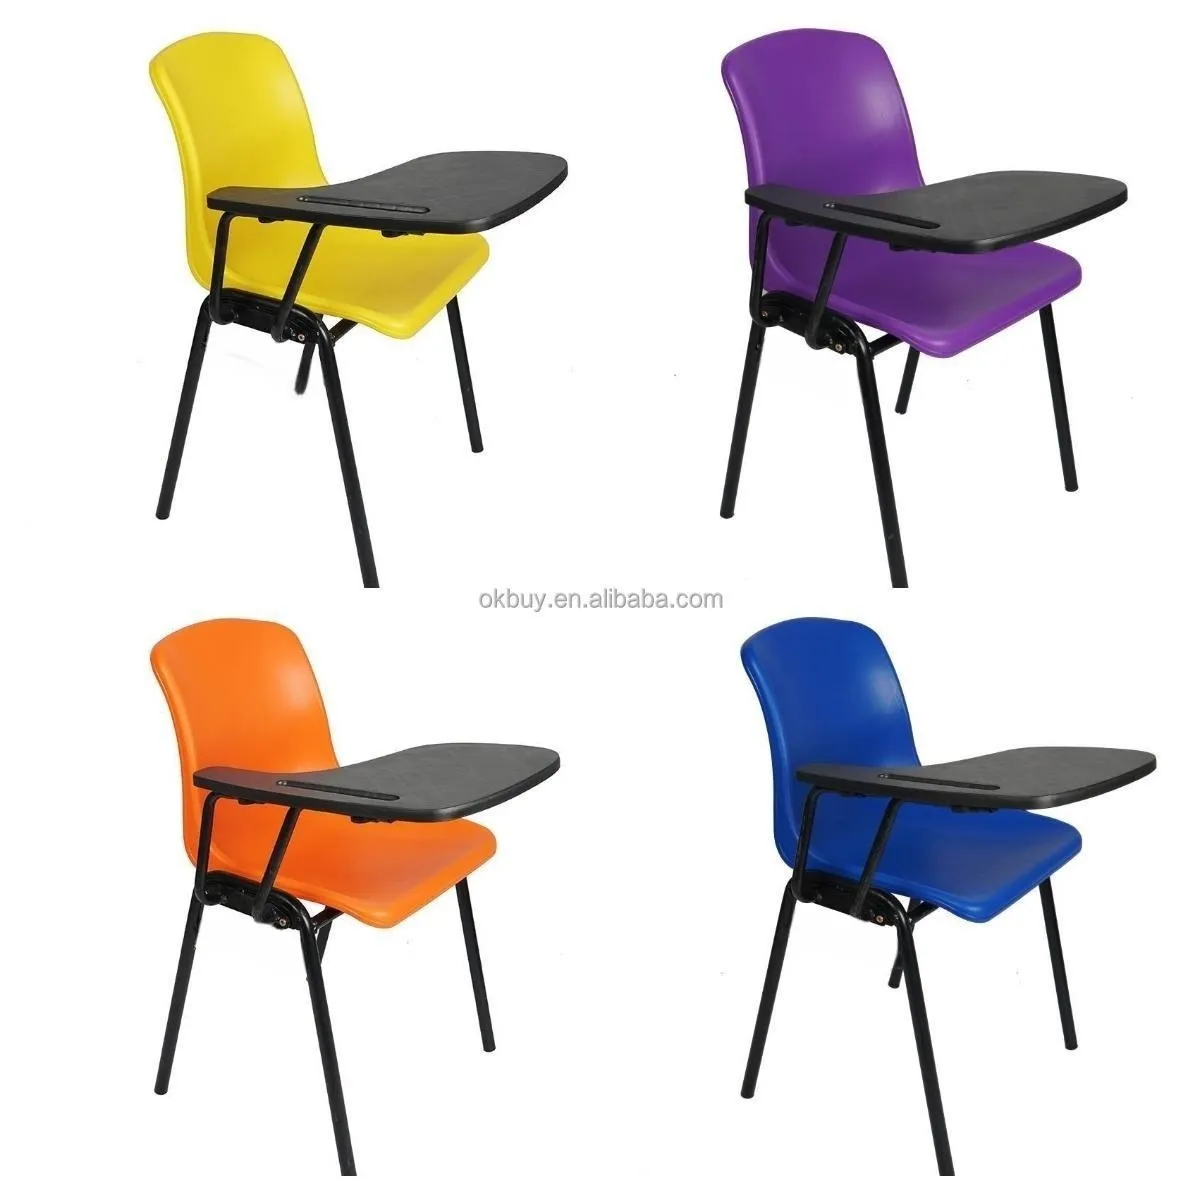 Vendita calda diretta della fabbrica palestra durevole sedia di plastica portatile colore diverso pp shell per scuola mensa sala conferenze sport